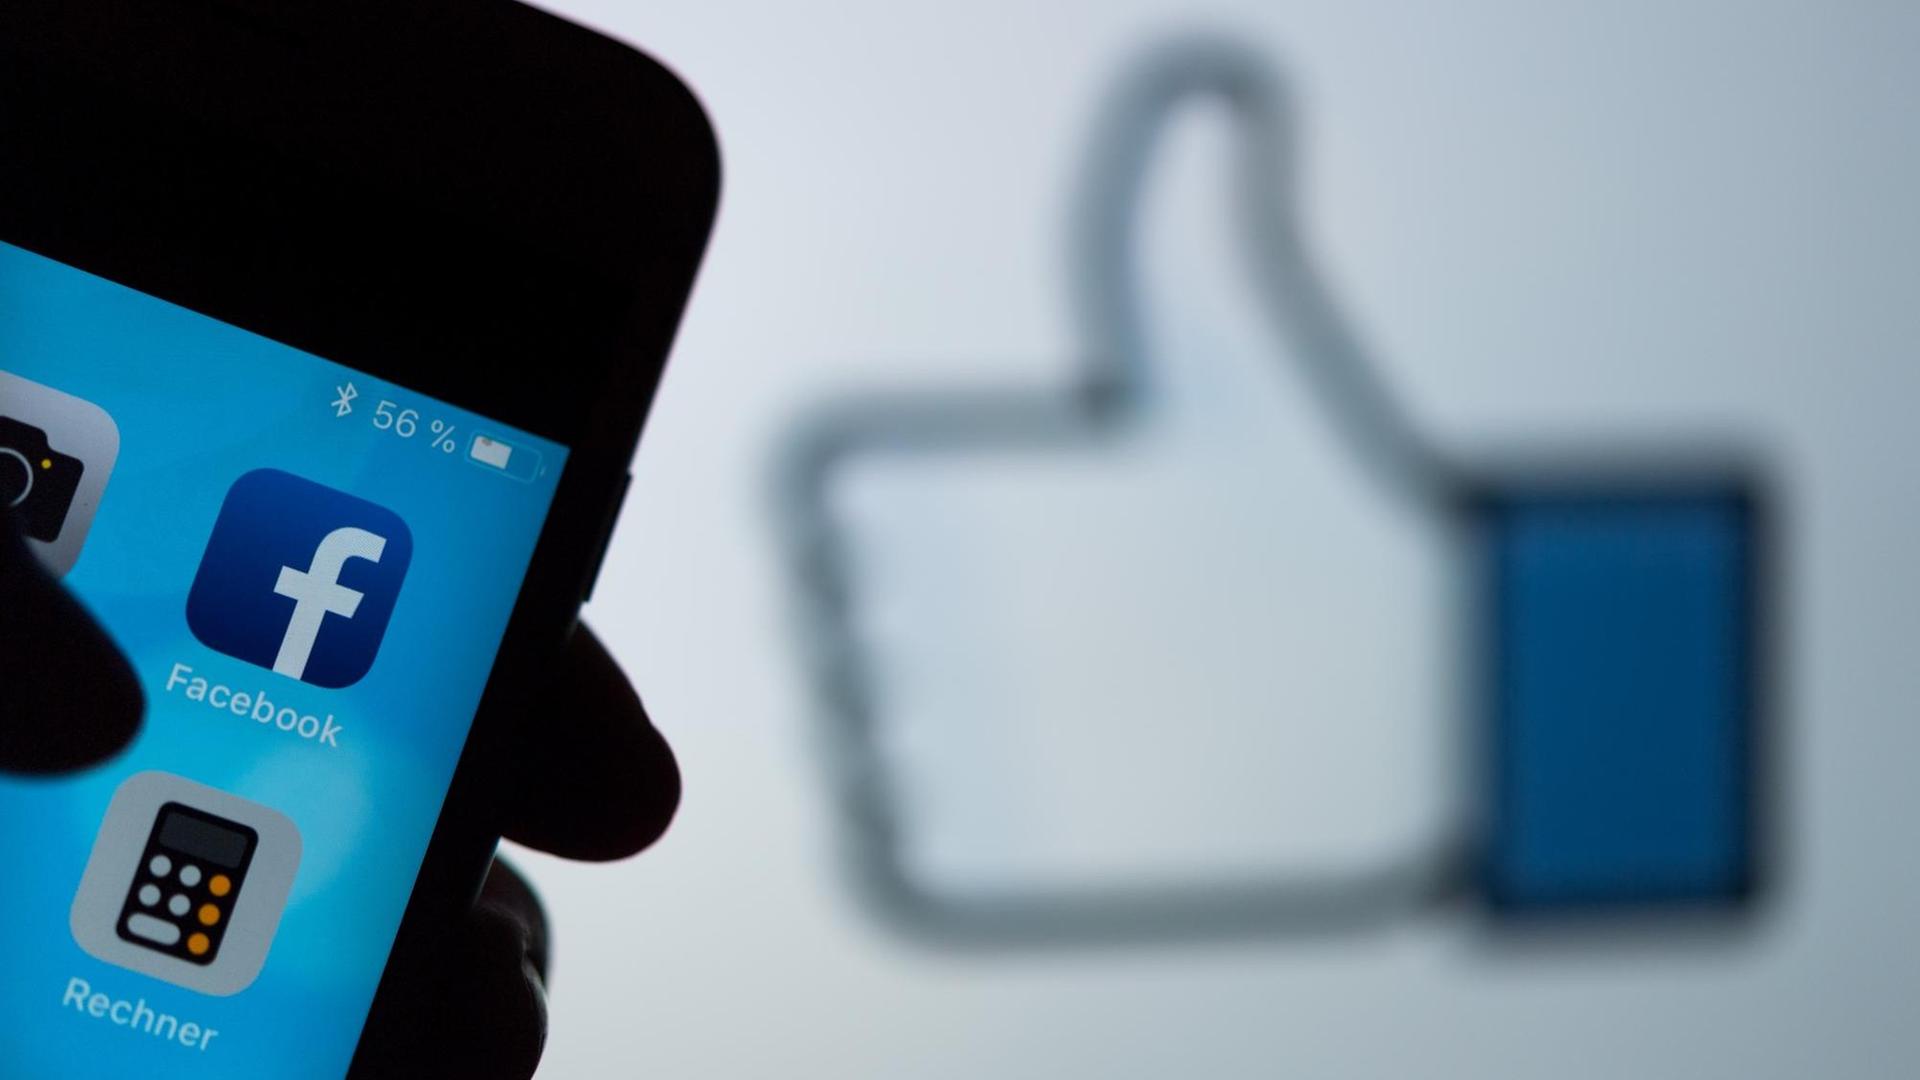 Das Logo des sozialen Netzwerks Facebook ist auf dem Display eines Smartphones zu sehen. Im Hintergrund wird auf einem Bildschirm ein das Zeichen für "Gefällt mir" (Daumen hoch) angezeigt.